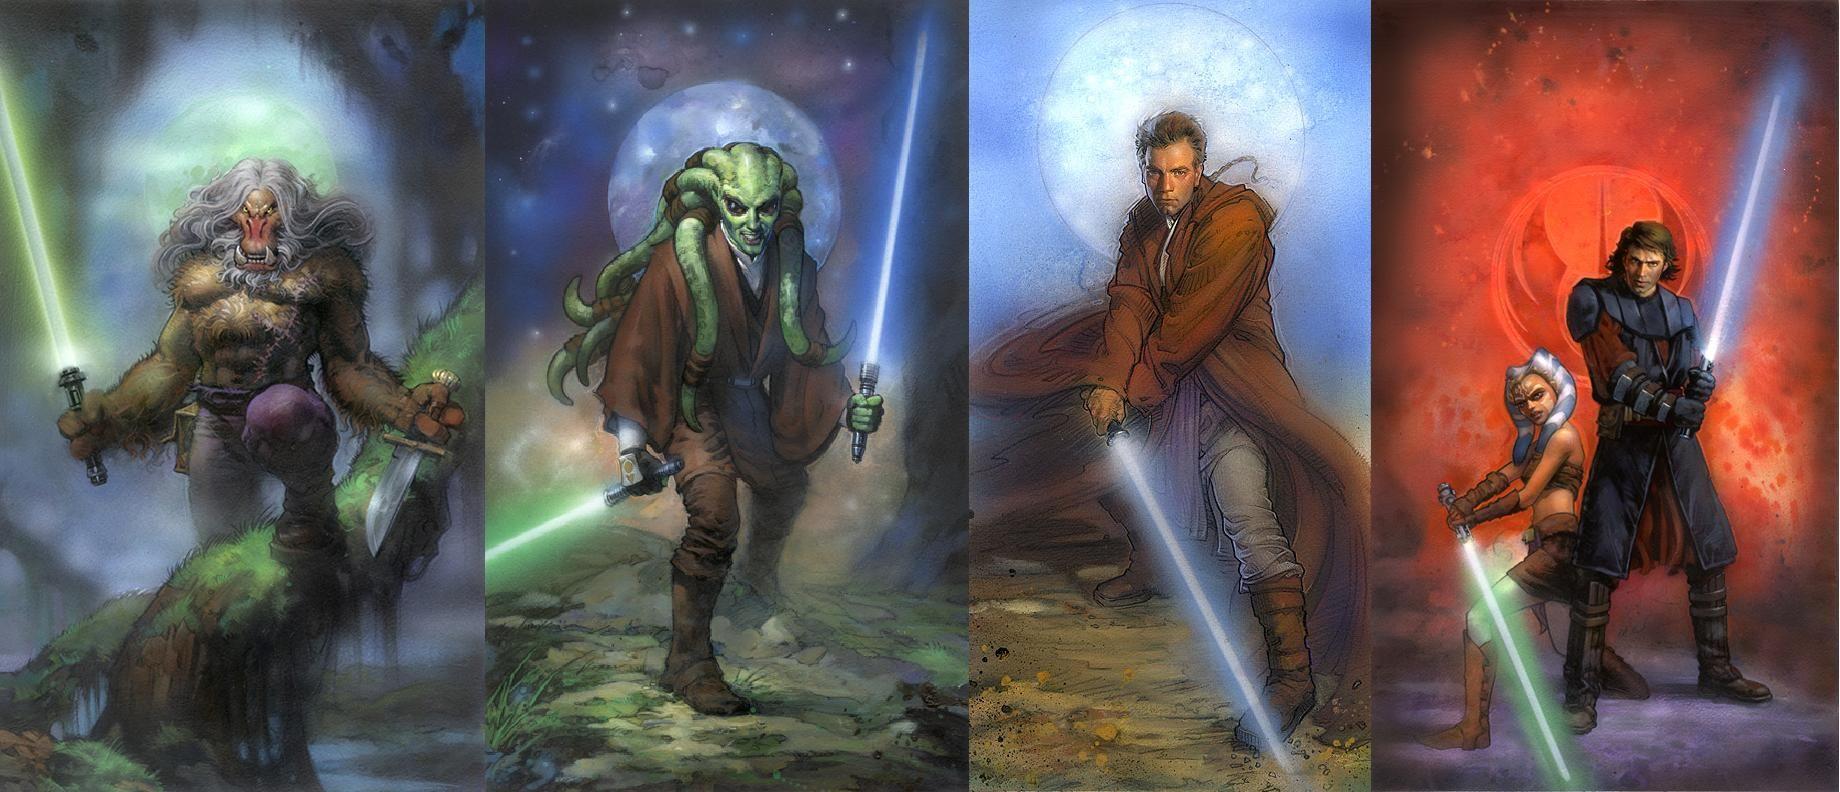 Star Wars Jedi Wallpaper Photo